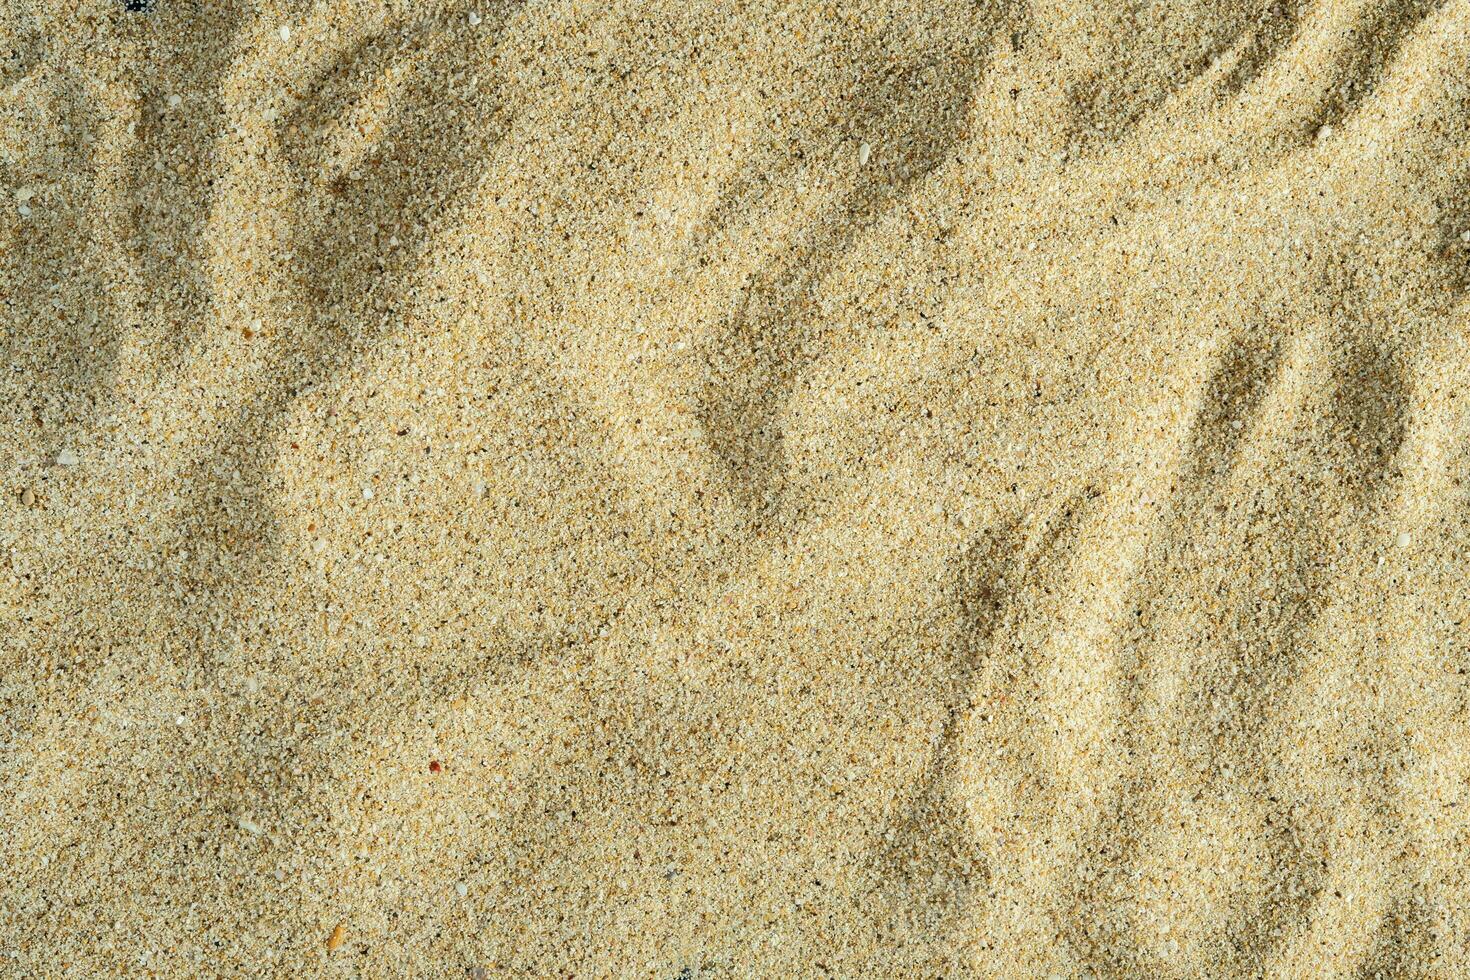 abstrakt Strand Sand Textur Hintergrund foto